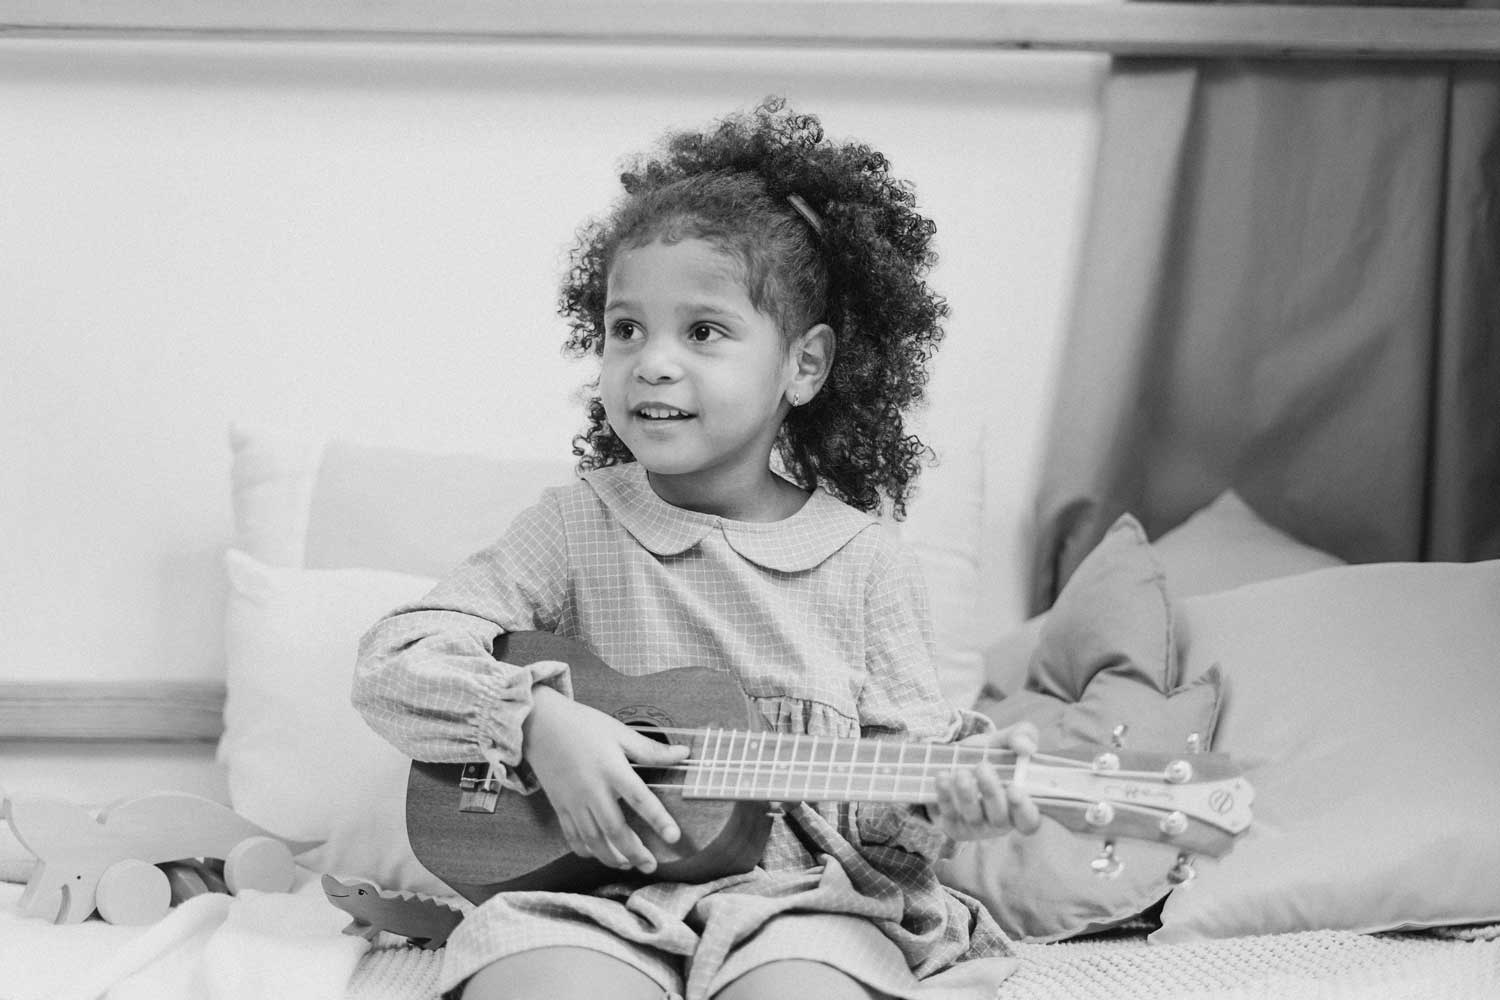 little kid, little guitar - Muhlenberg Music Mission